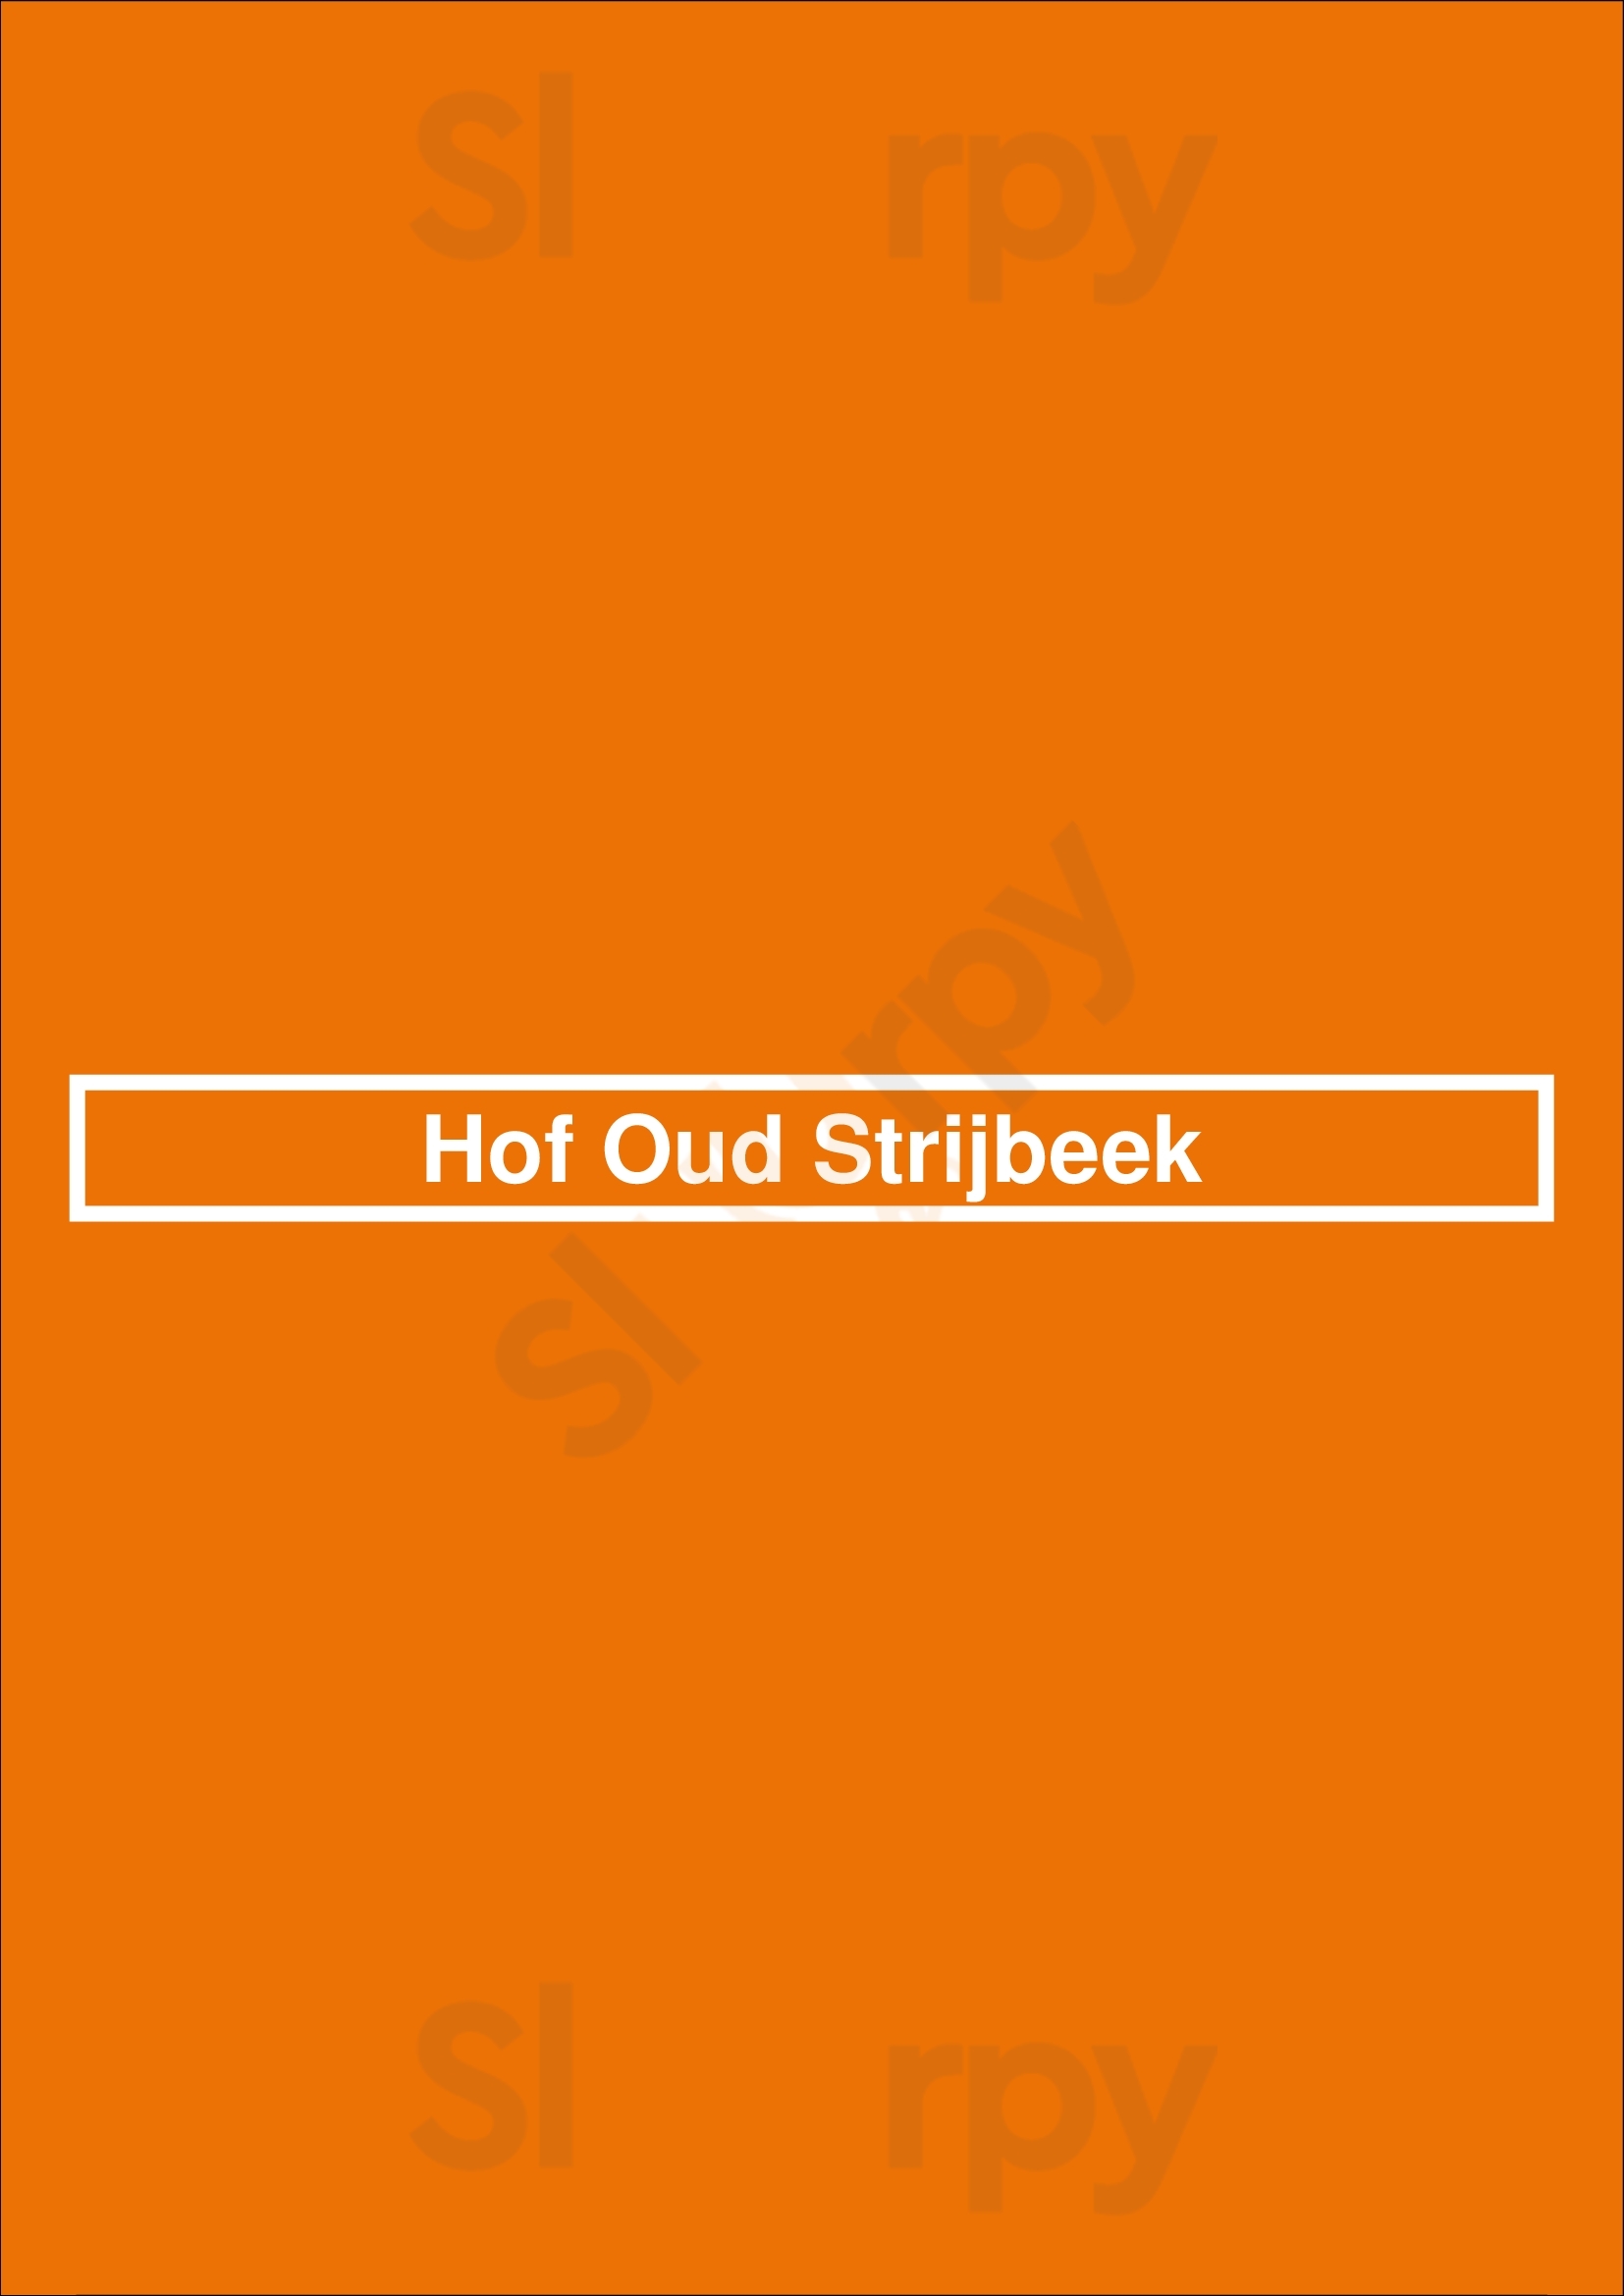 Hof Oud Strijbeek Strijbeek Menu - 1